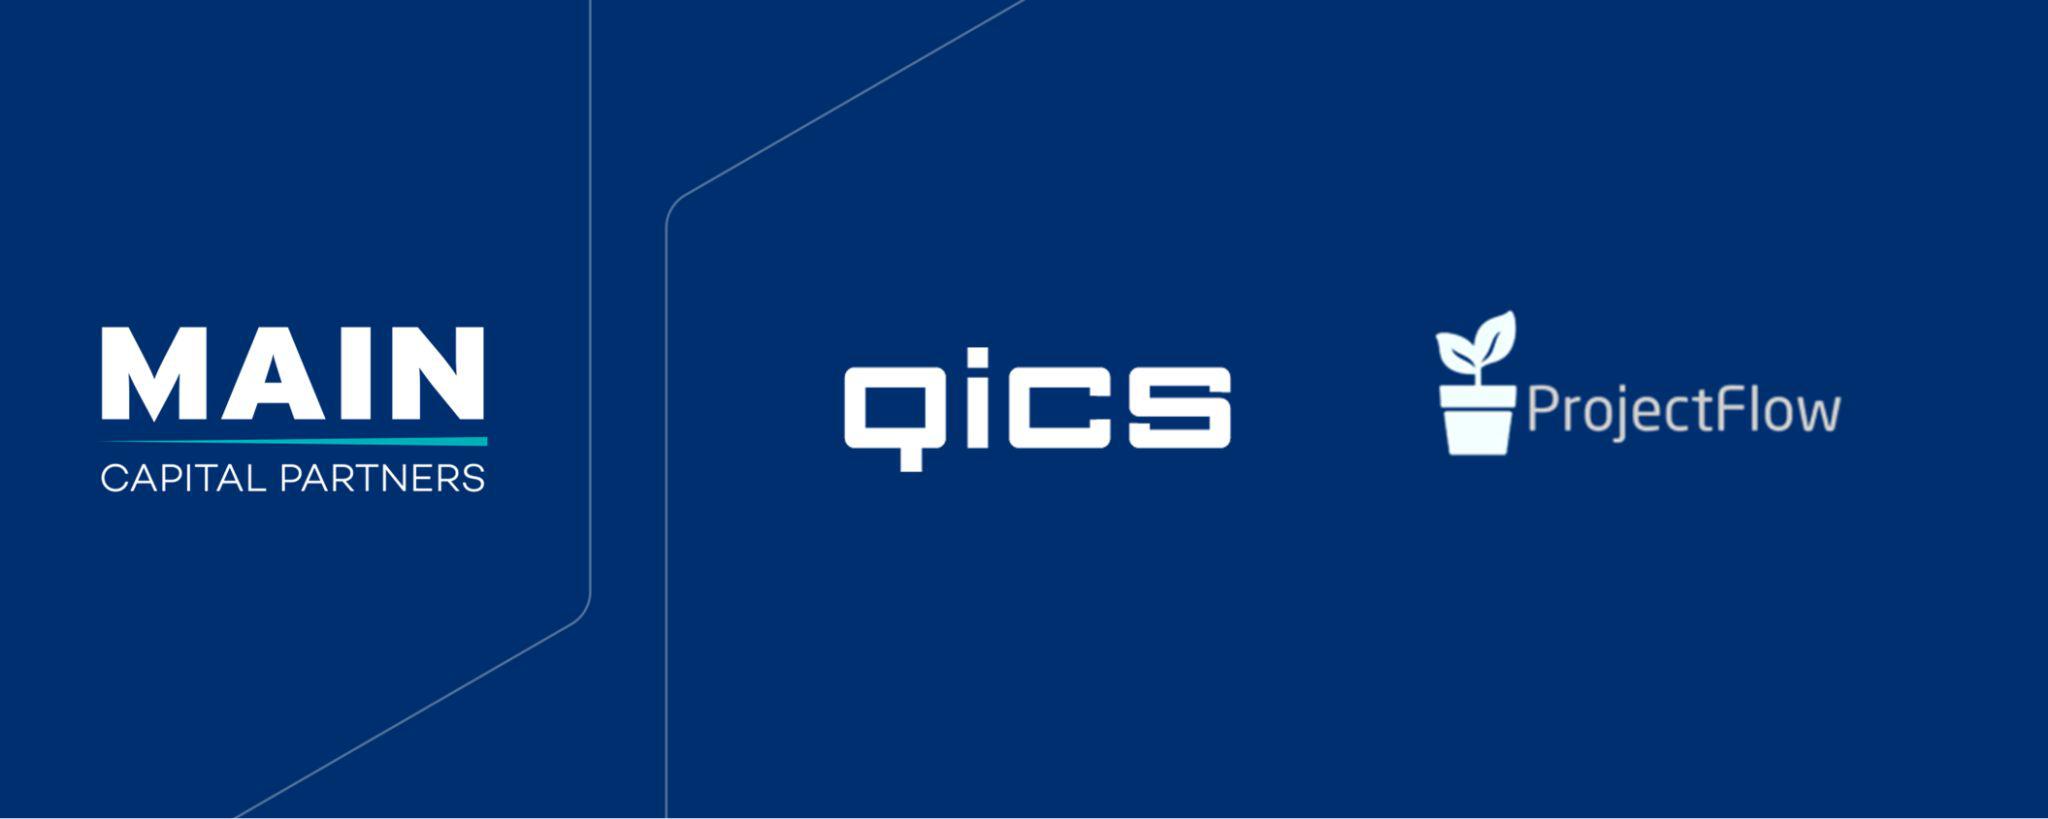 Spoločnosť Qics expanduje na &scaron;kandin&aacute;vsky trh akviz&iacute;ciou d&aacute;nskej spoločnosti Projectflow